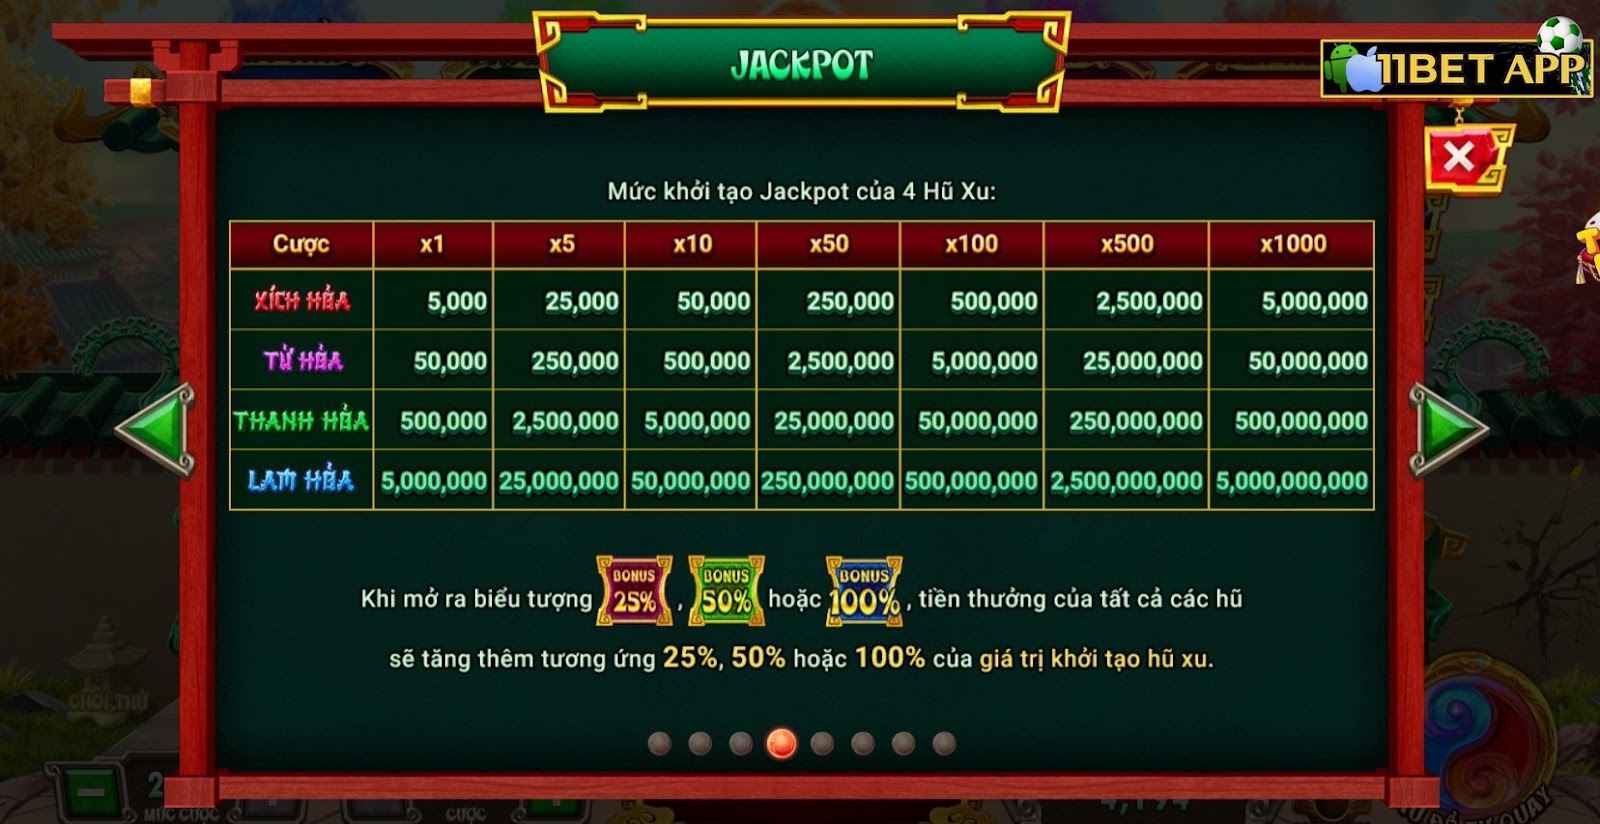 Chế độ jackpot trong game